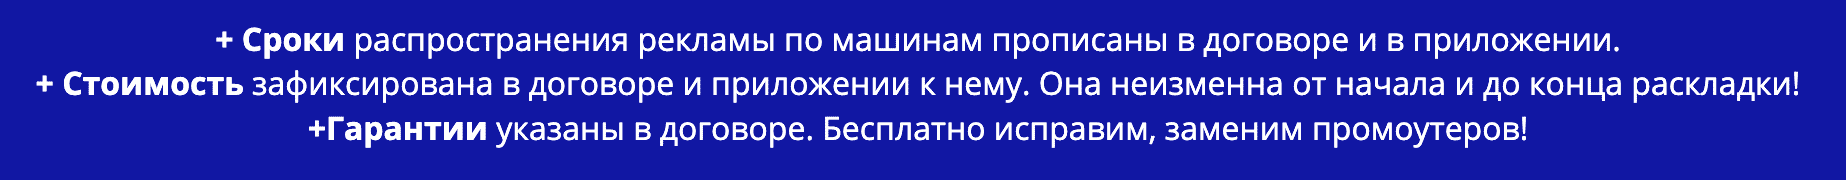 Преимущества распространения рекламы под дворники по договору Козьмодемьянск